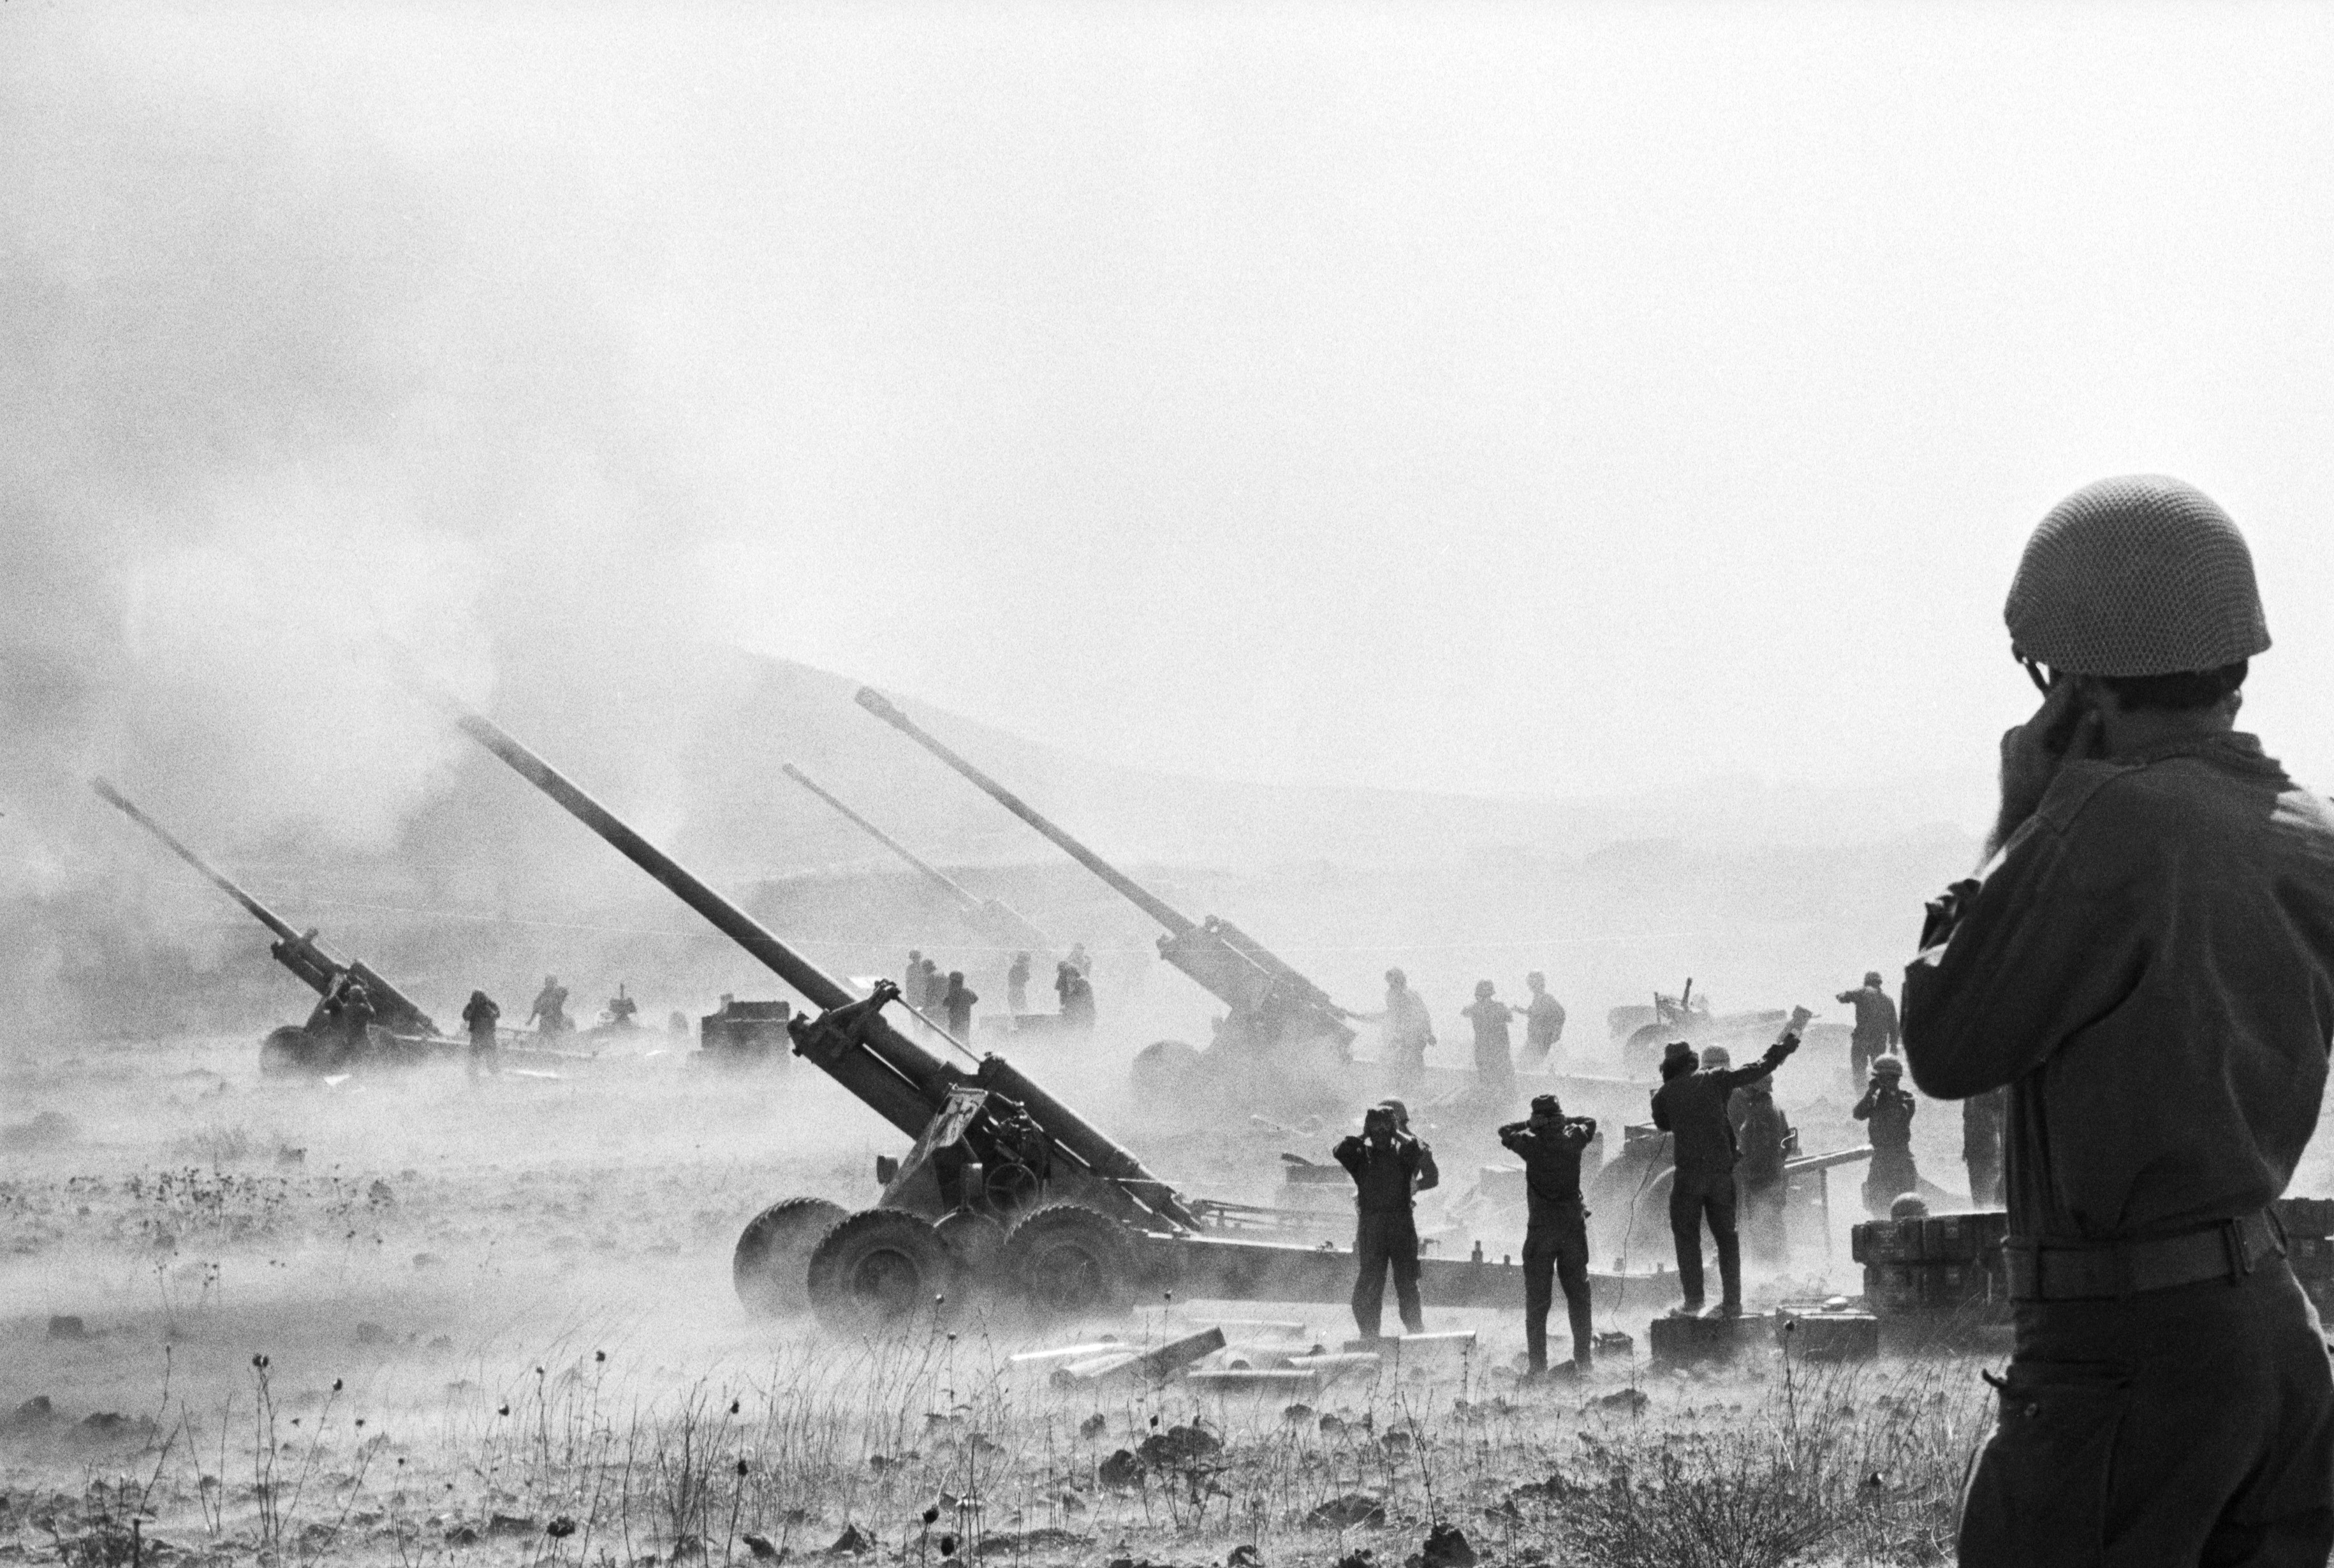 Израильская артиллерия ведет огонь по сирийским позициям.
CIA / Wikimedia